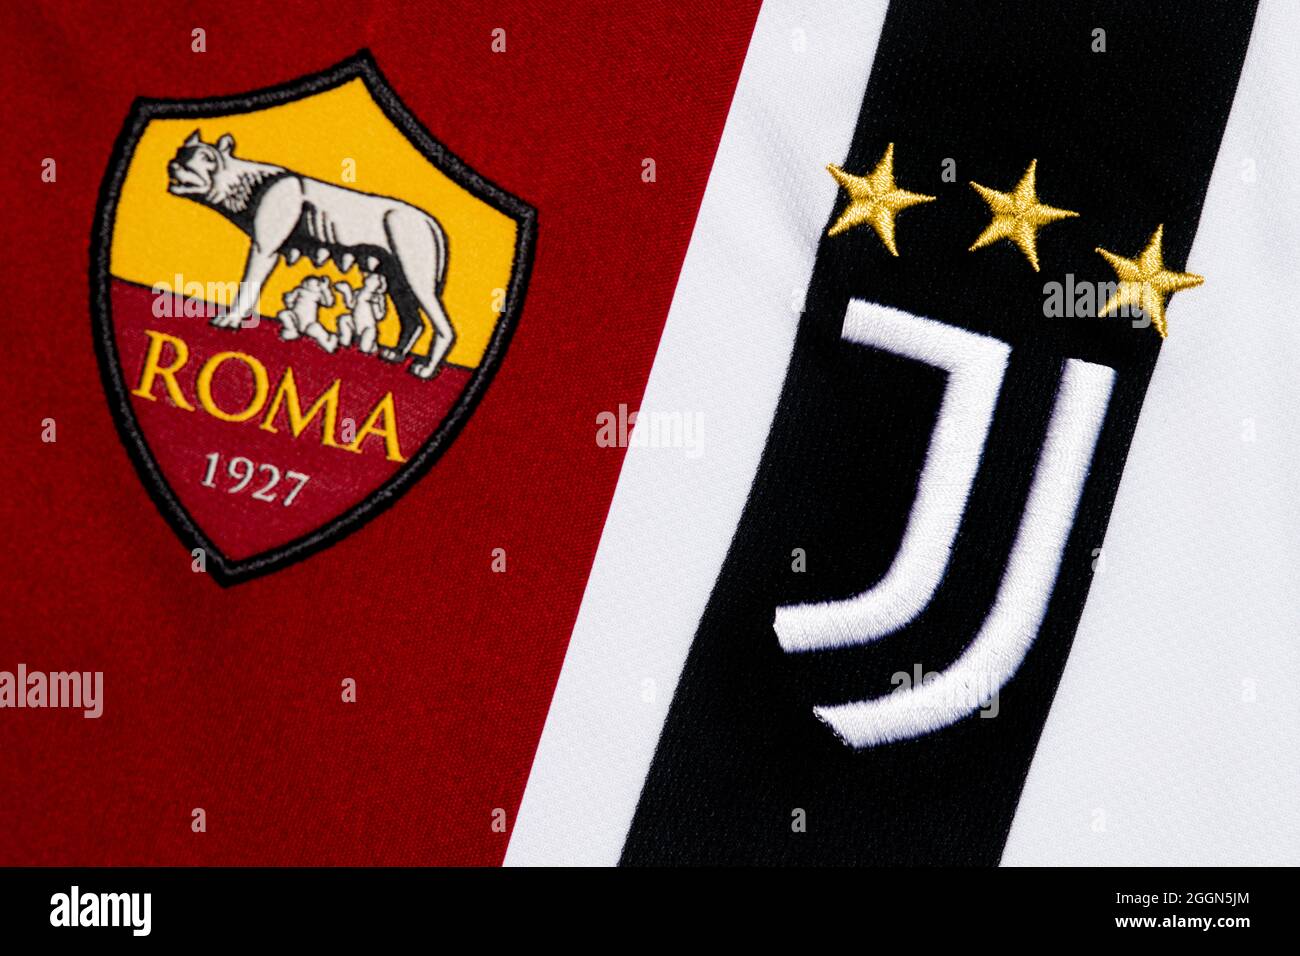 Primo piano dello stemma del Club Roma & Juventus. Foto Stock